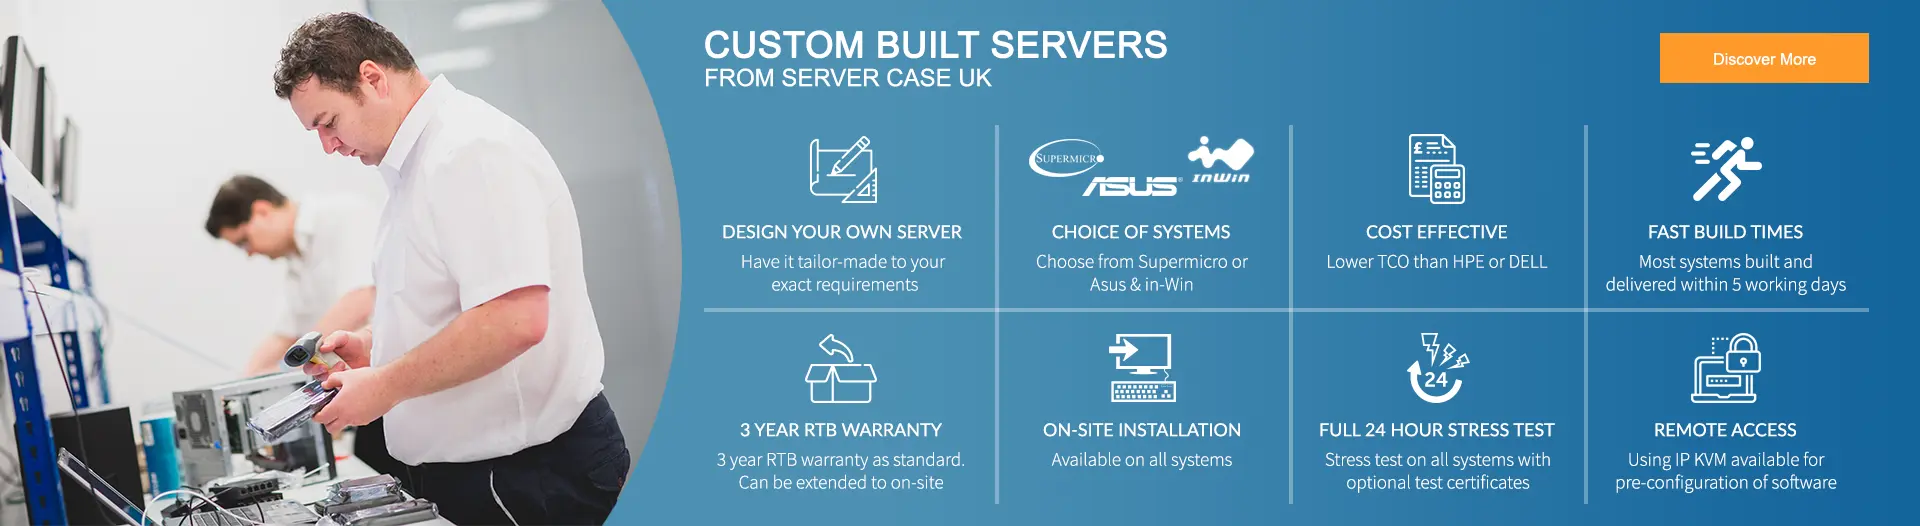 Custom Built Servers from Server Case UK